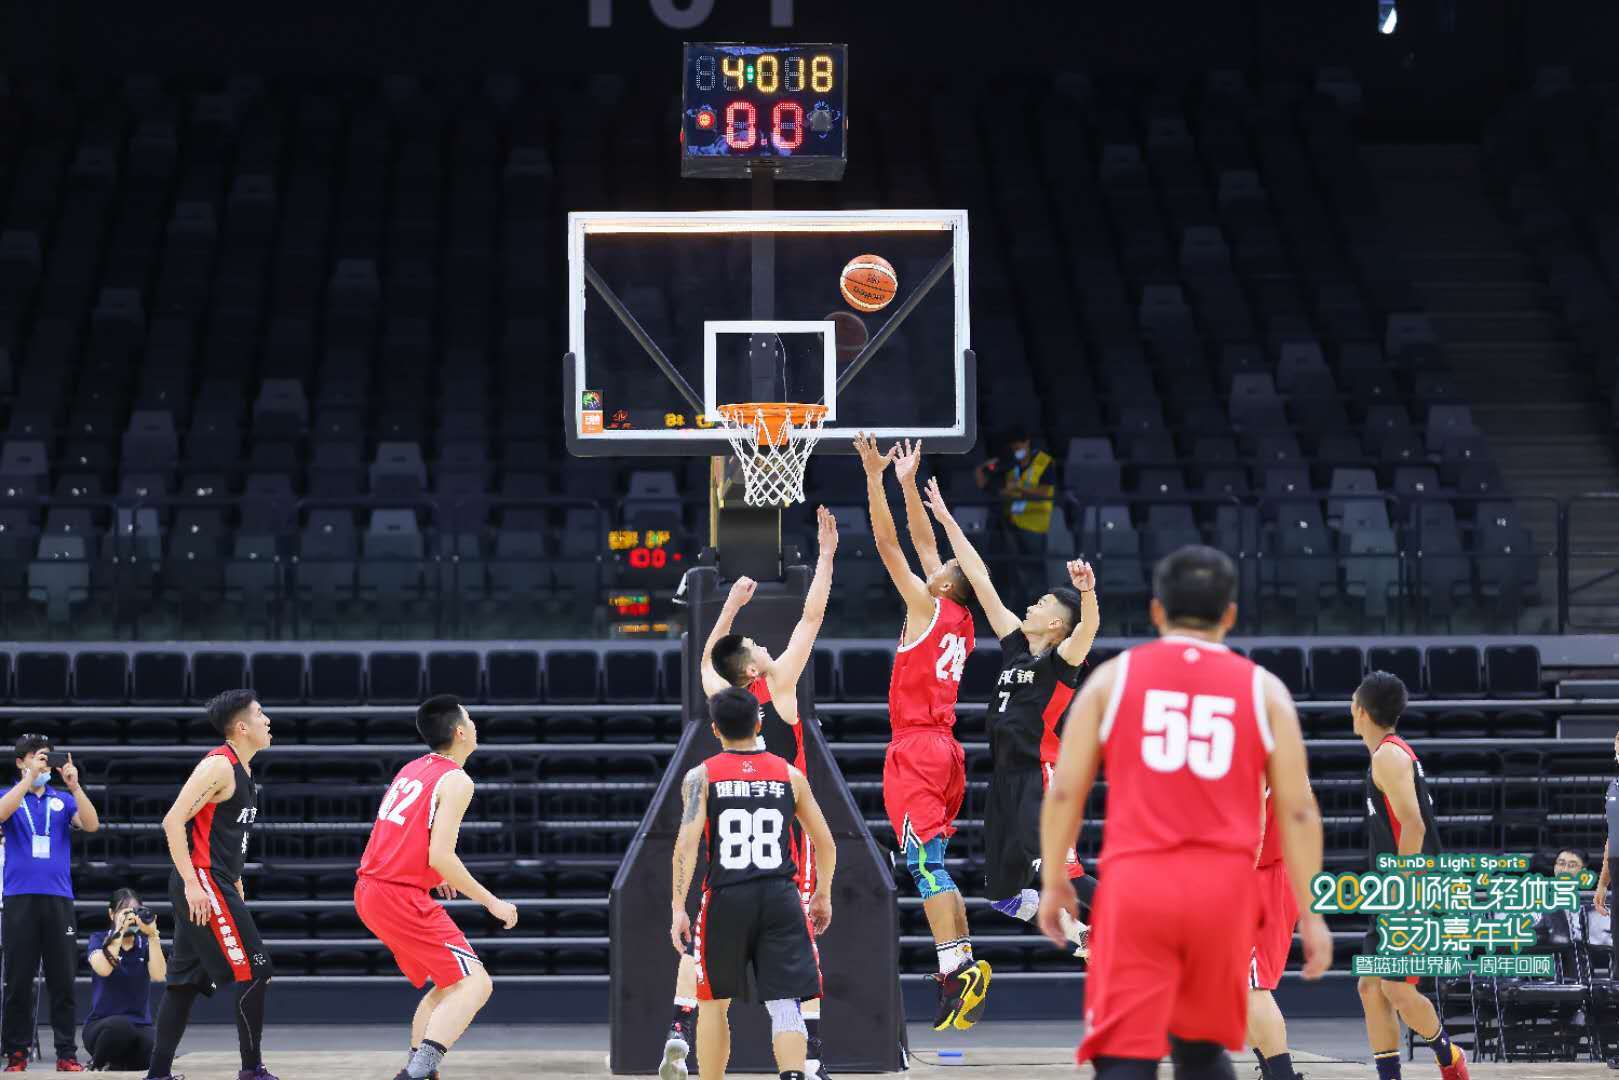 顺德区第十二届运动会篮球比赛（男子成年组）在场馆内开赛。